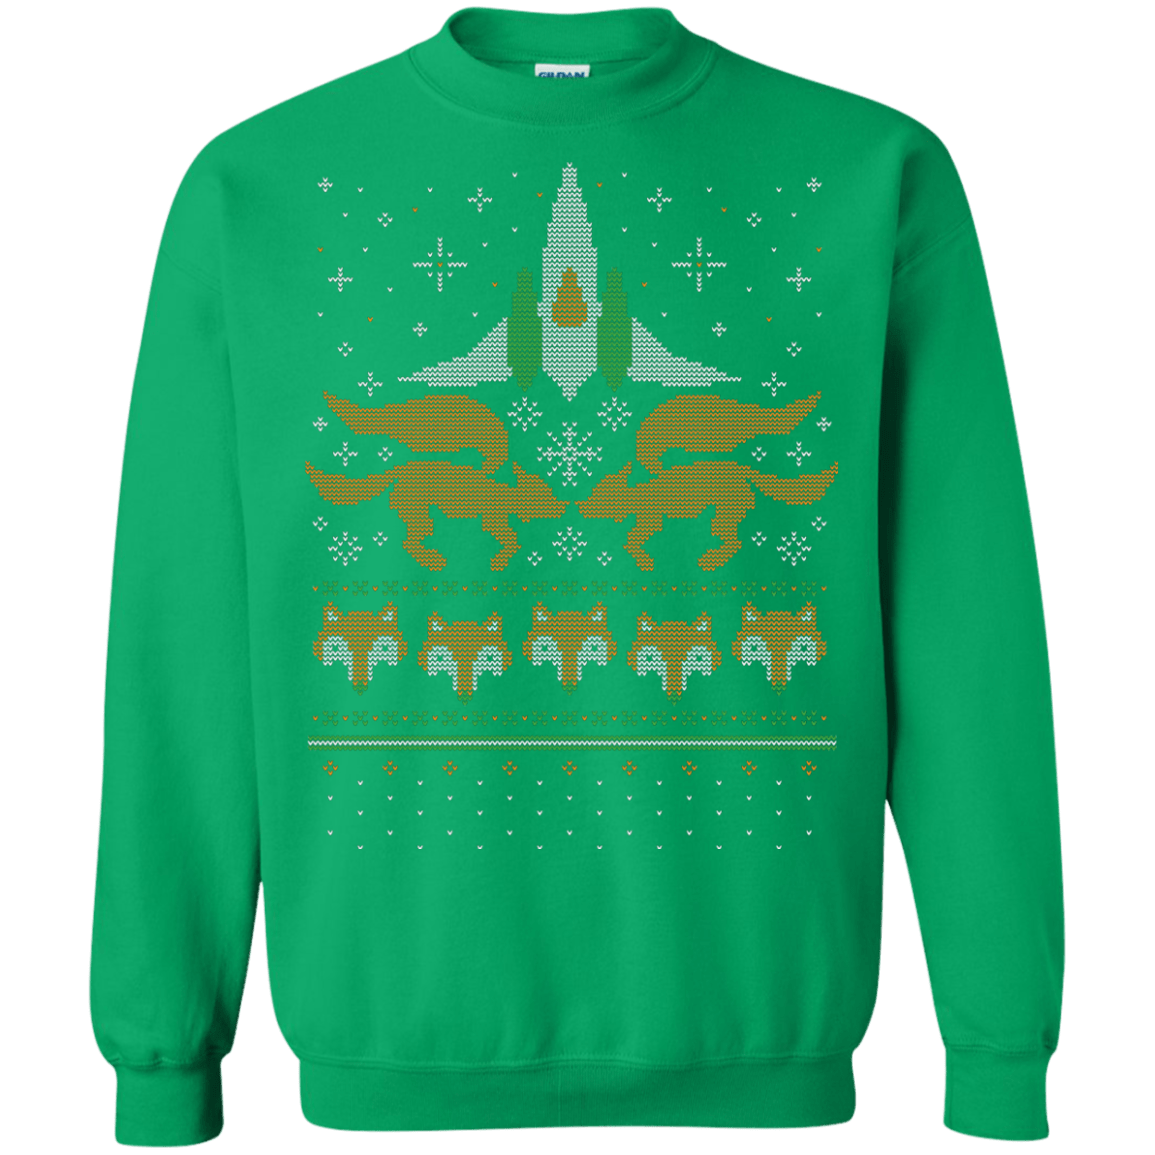 Sweatshirts Irish Green / Small Foxy Threads Crewneck Sweatshirt